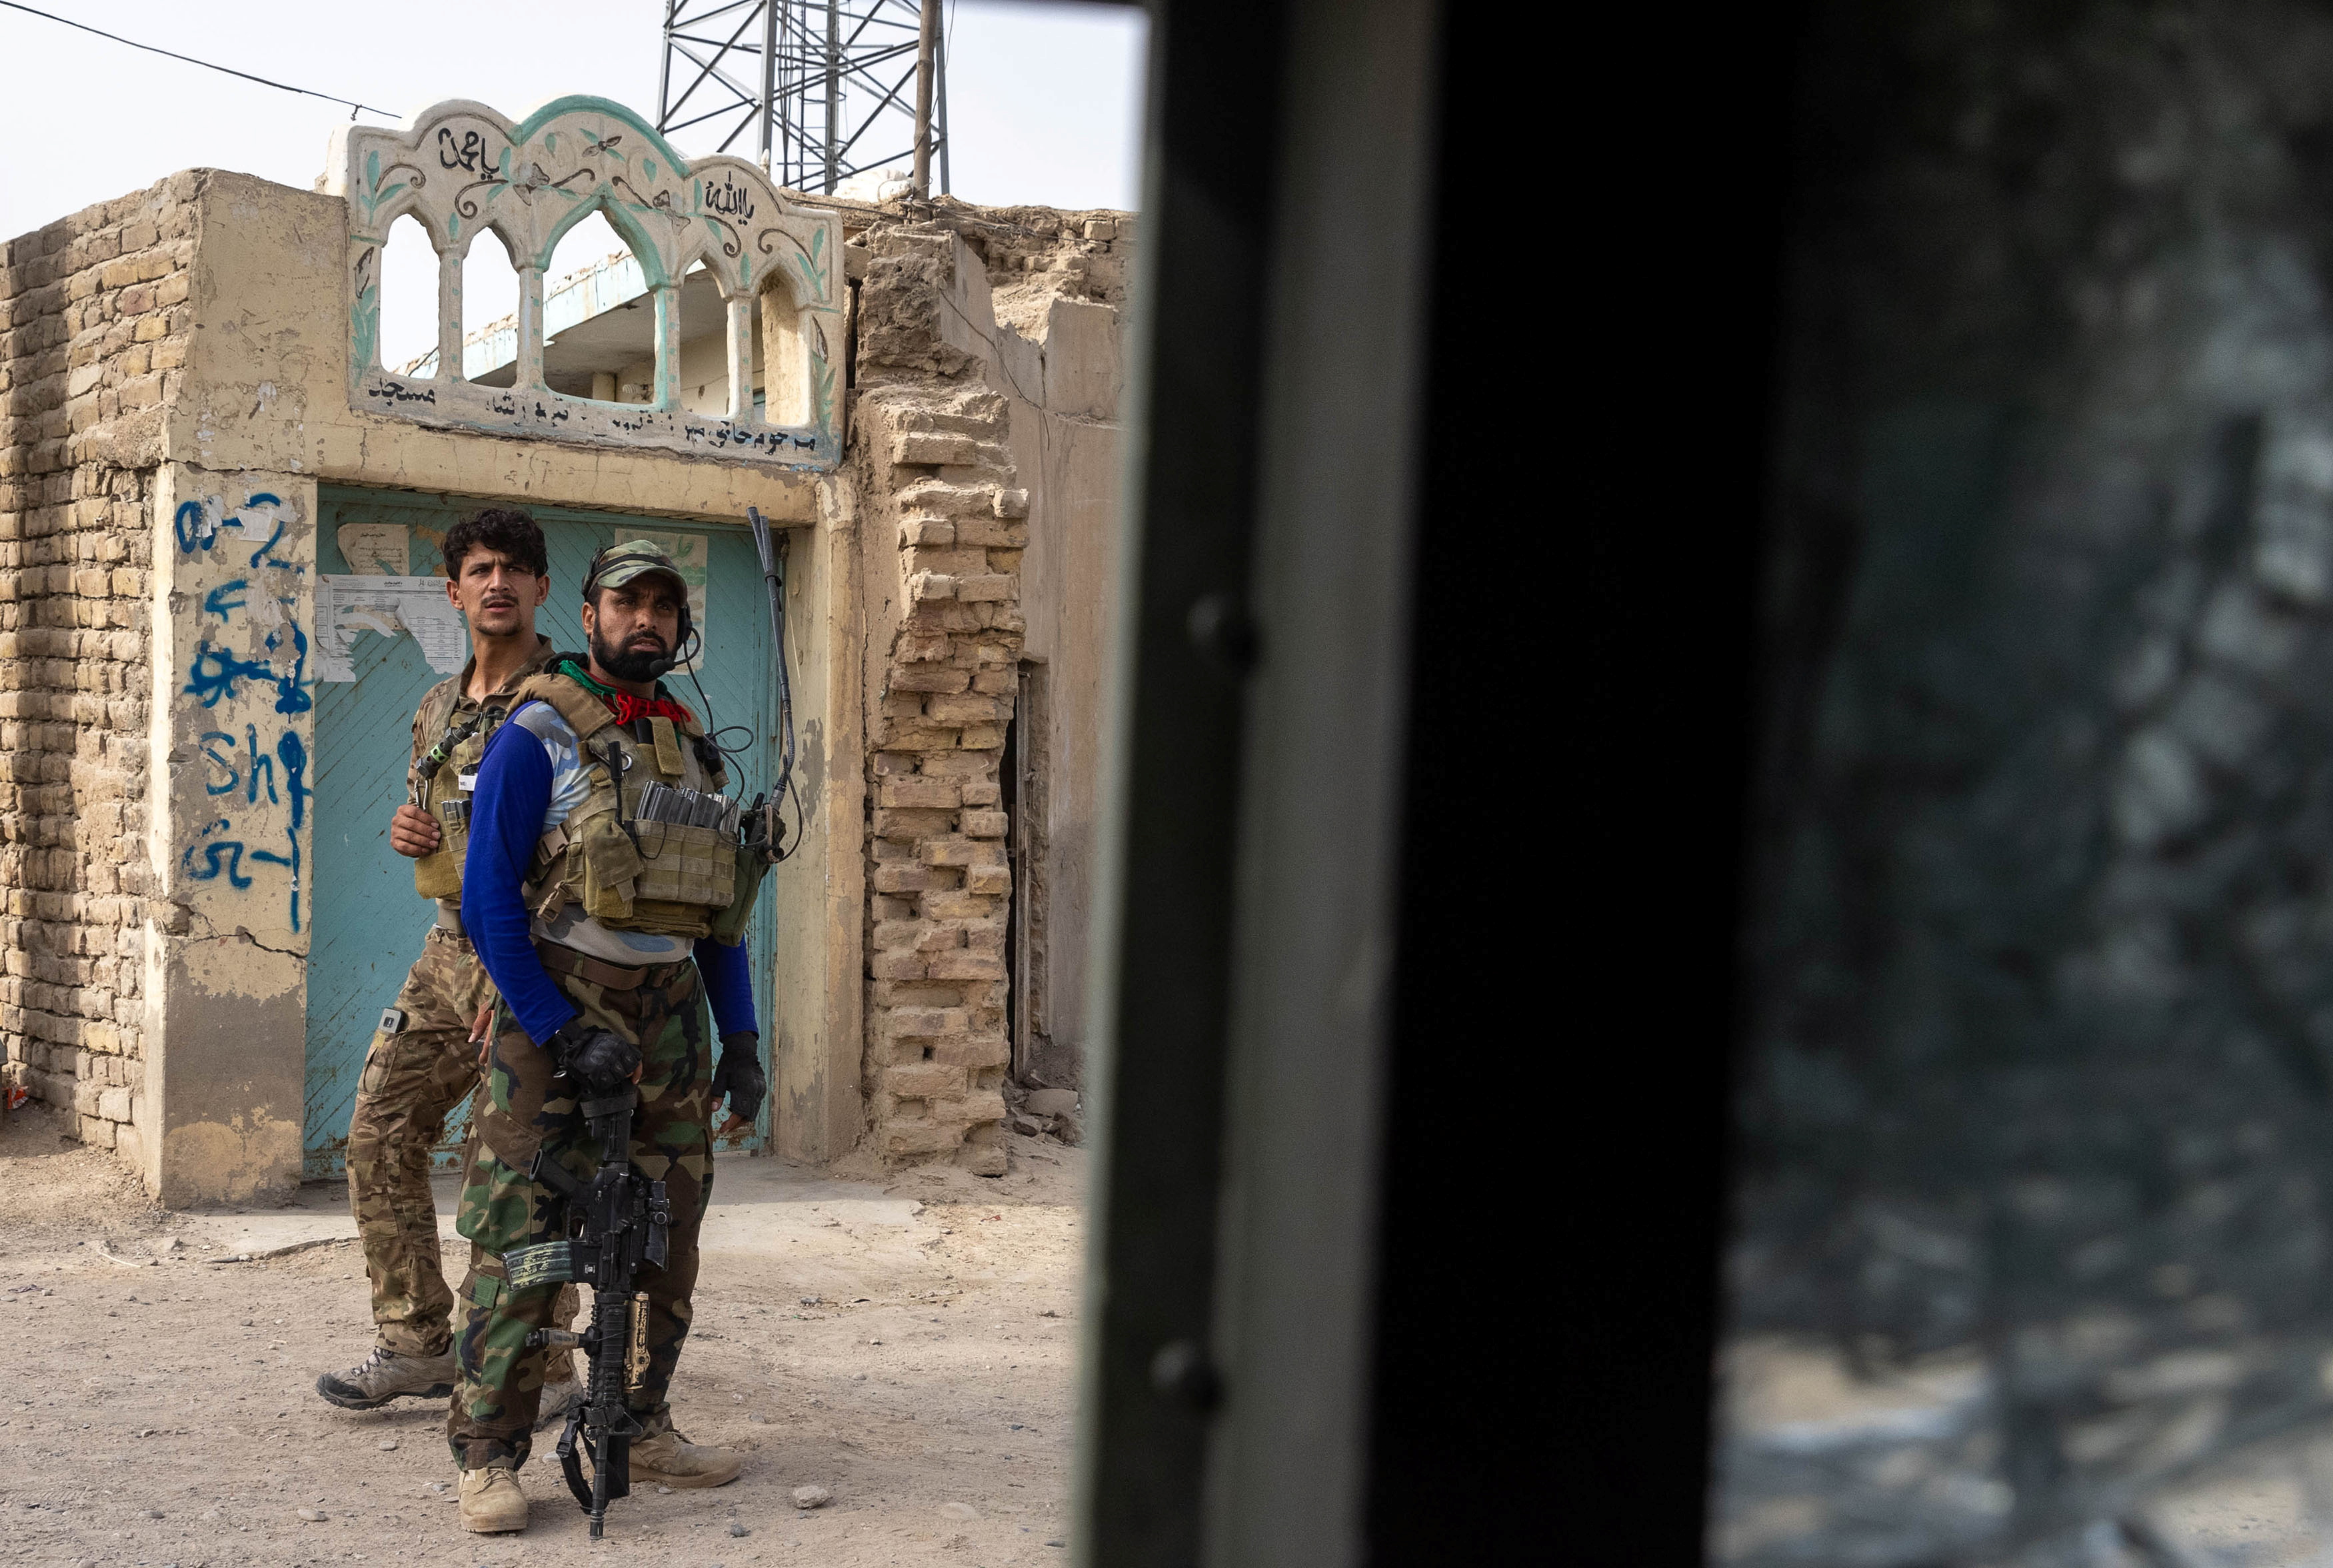 Miembros de las fuerzas especiales afganas se reagrupan tras fuertes enfrentamientos con los talibanes durante la misión de rescate de un policía asediado en un puesto de control, en la provincia de Kandahar, Afganistán, el 13 de julio de 2021.